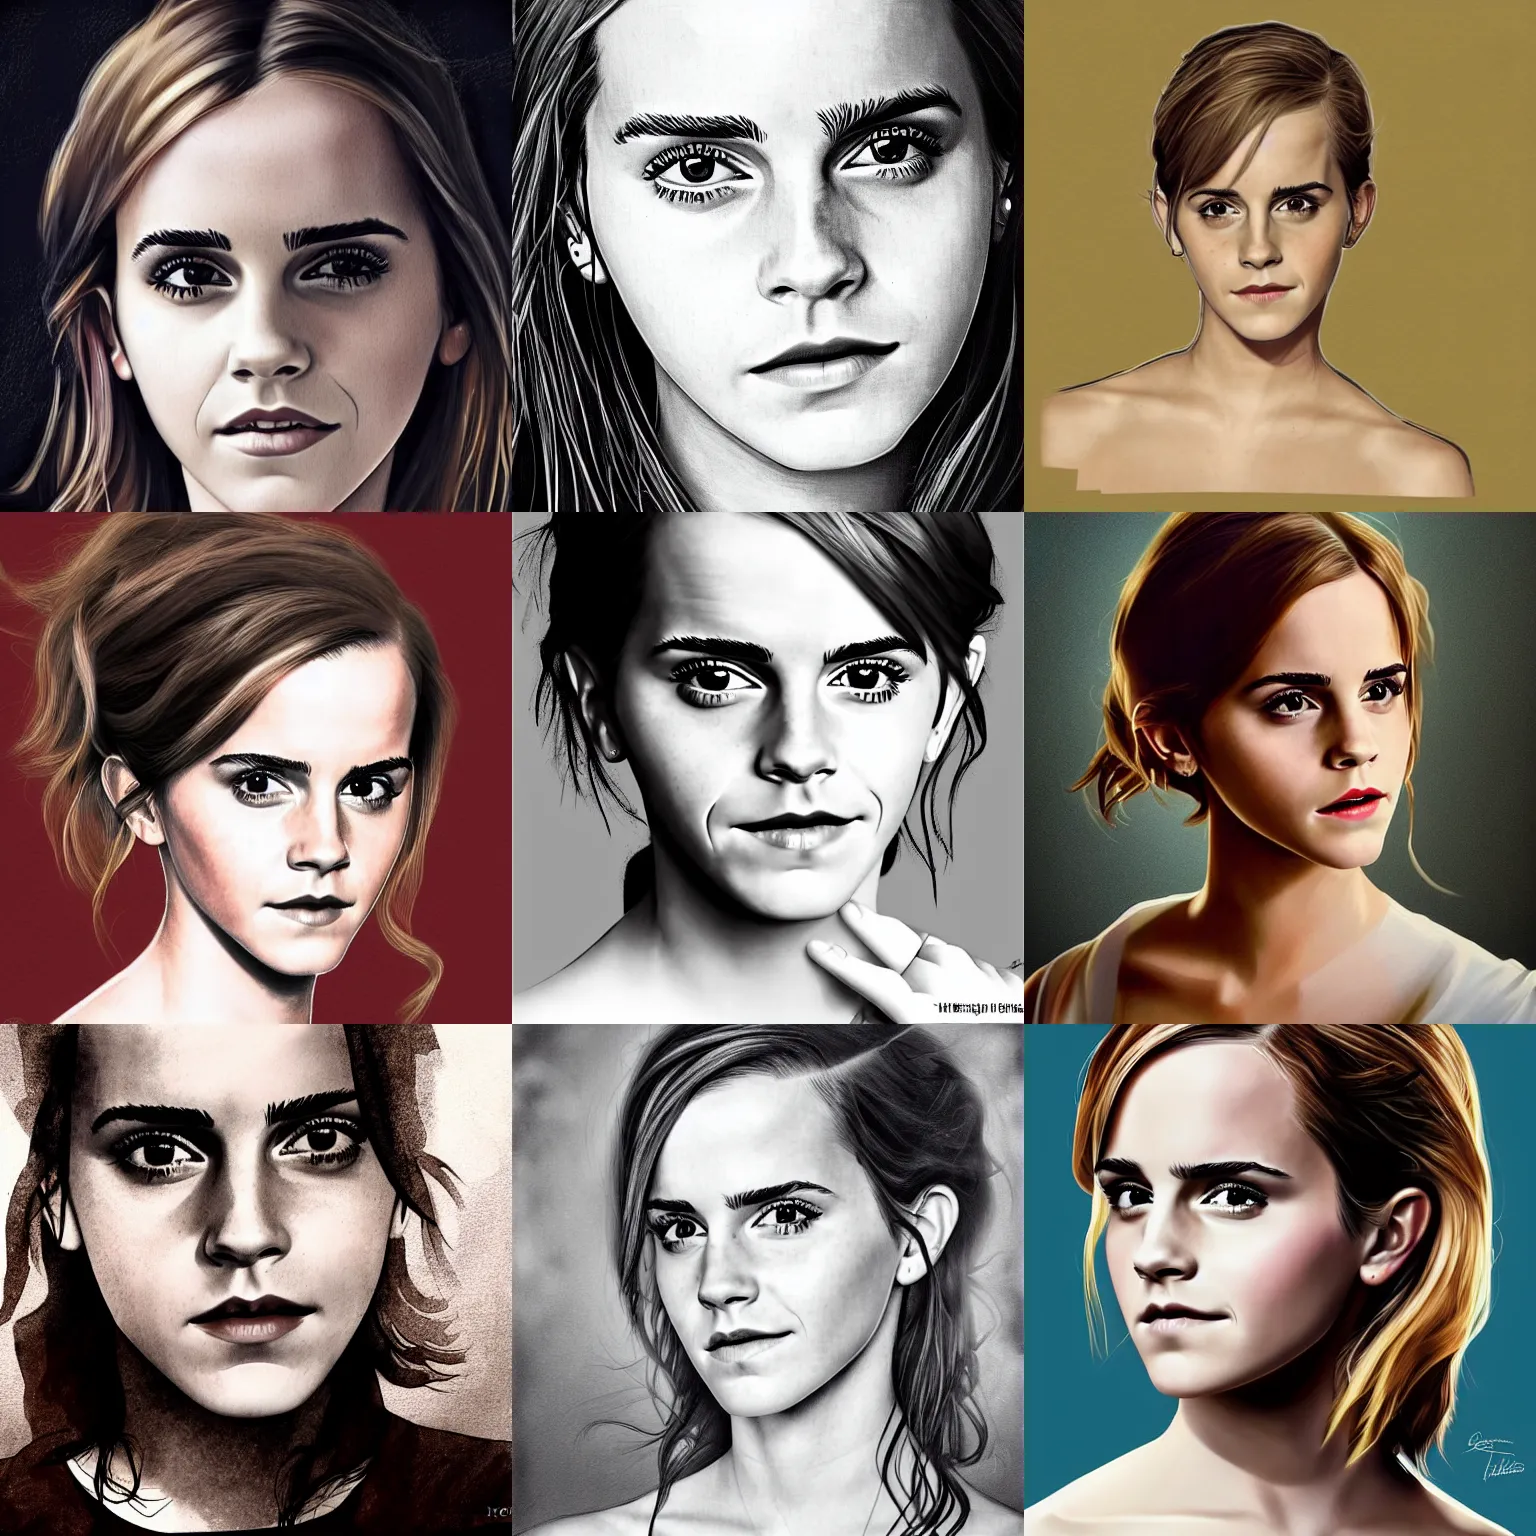 Prompt: Emma Watson, by Hegre art